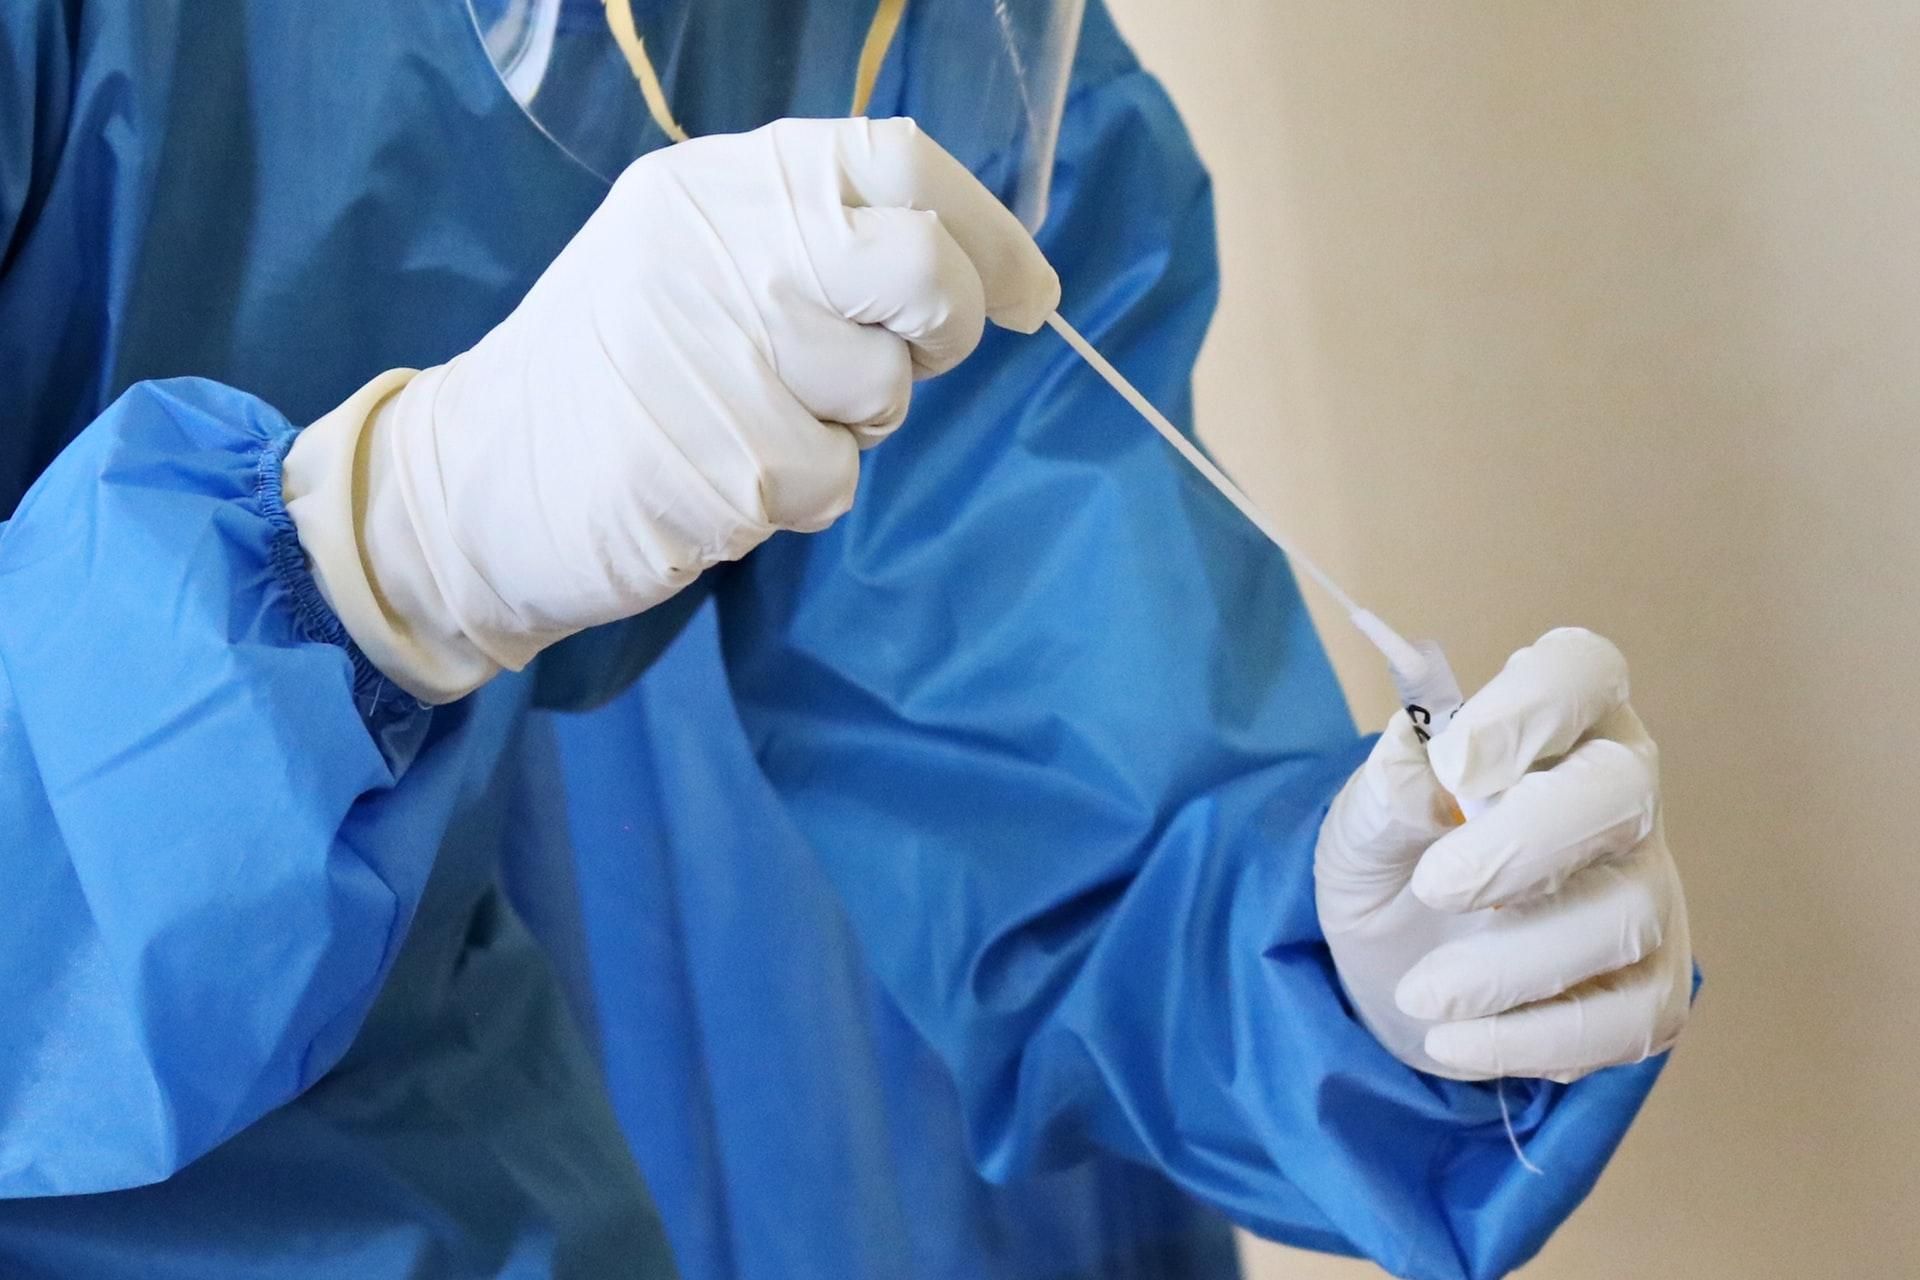 В Житомирі інфекційна лікарня повністю заповнення пацієнтами з коронавірусом - Новини Житомира сьогодні - Новини Здоров’я